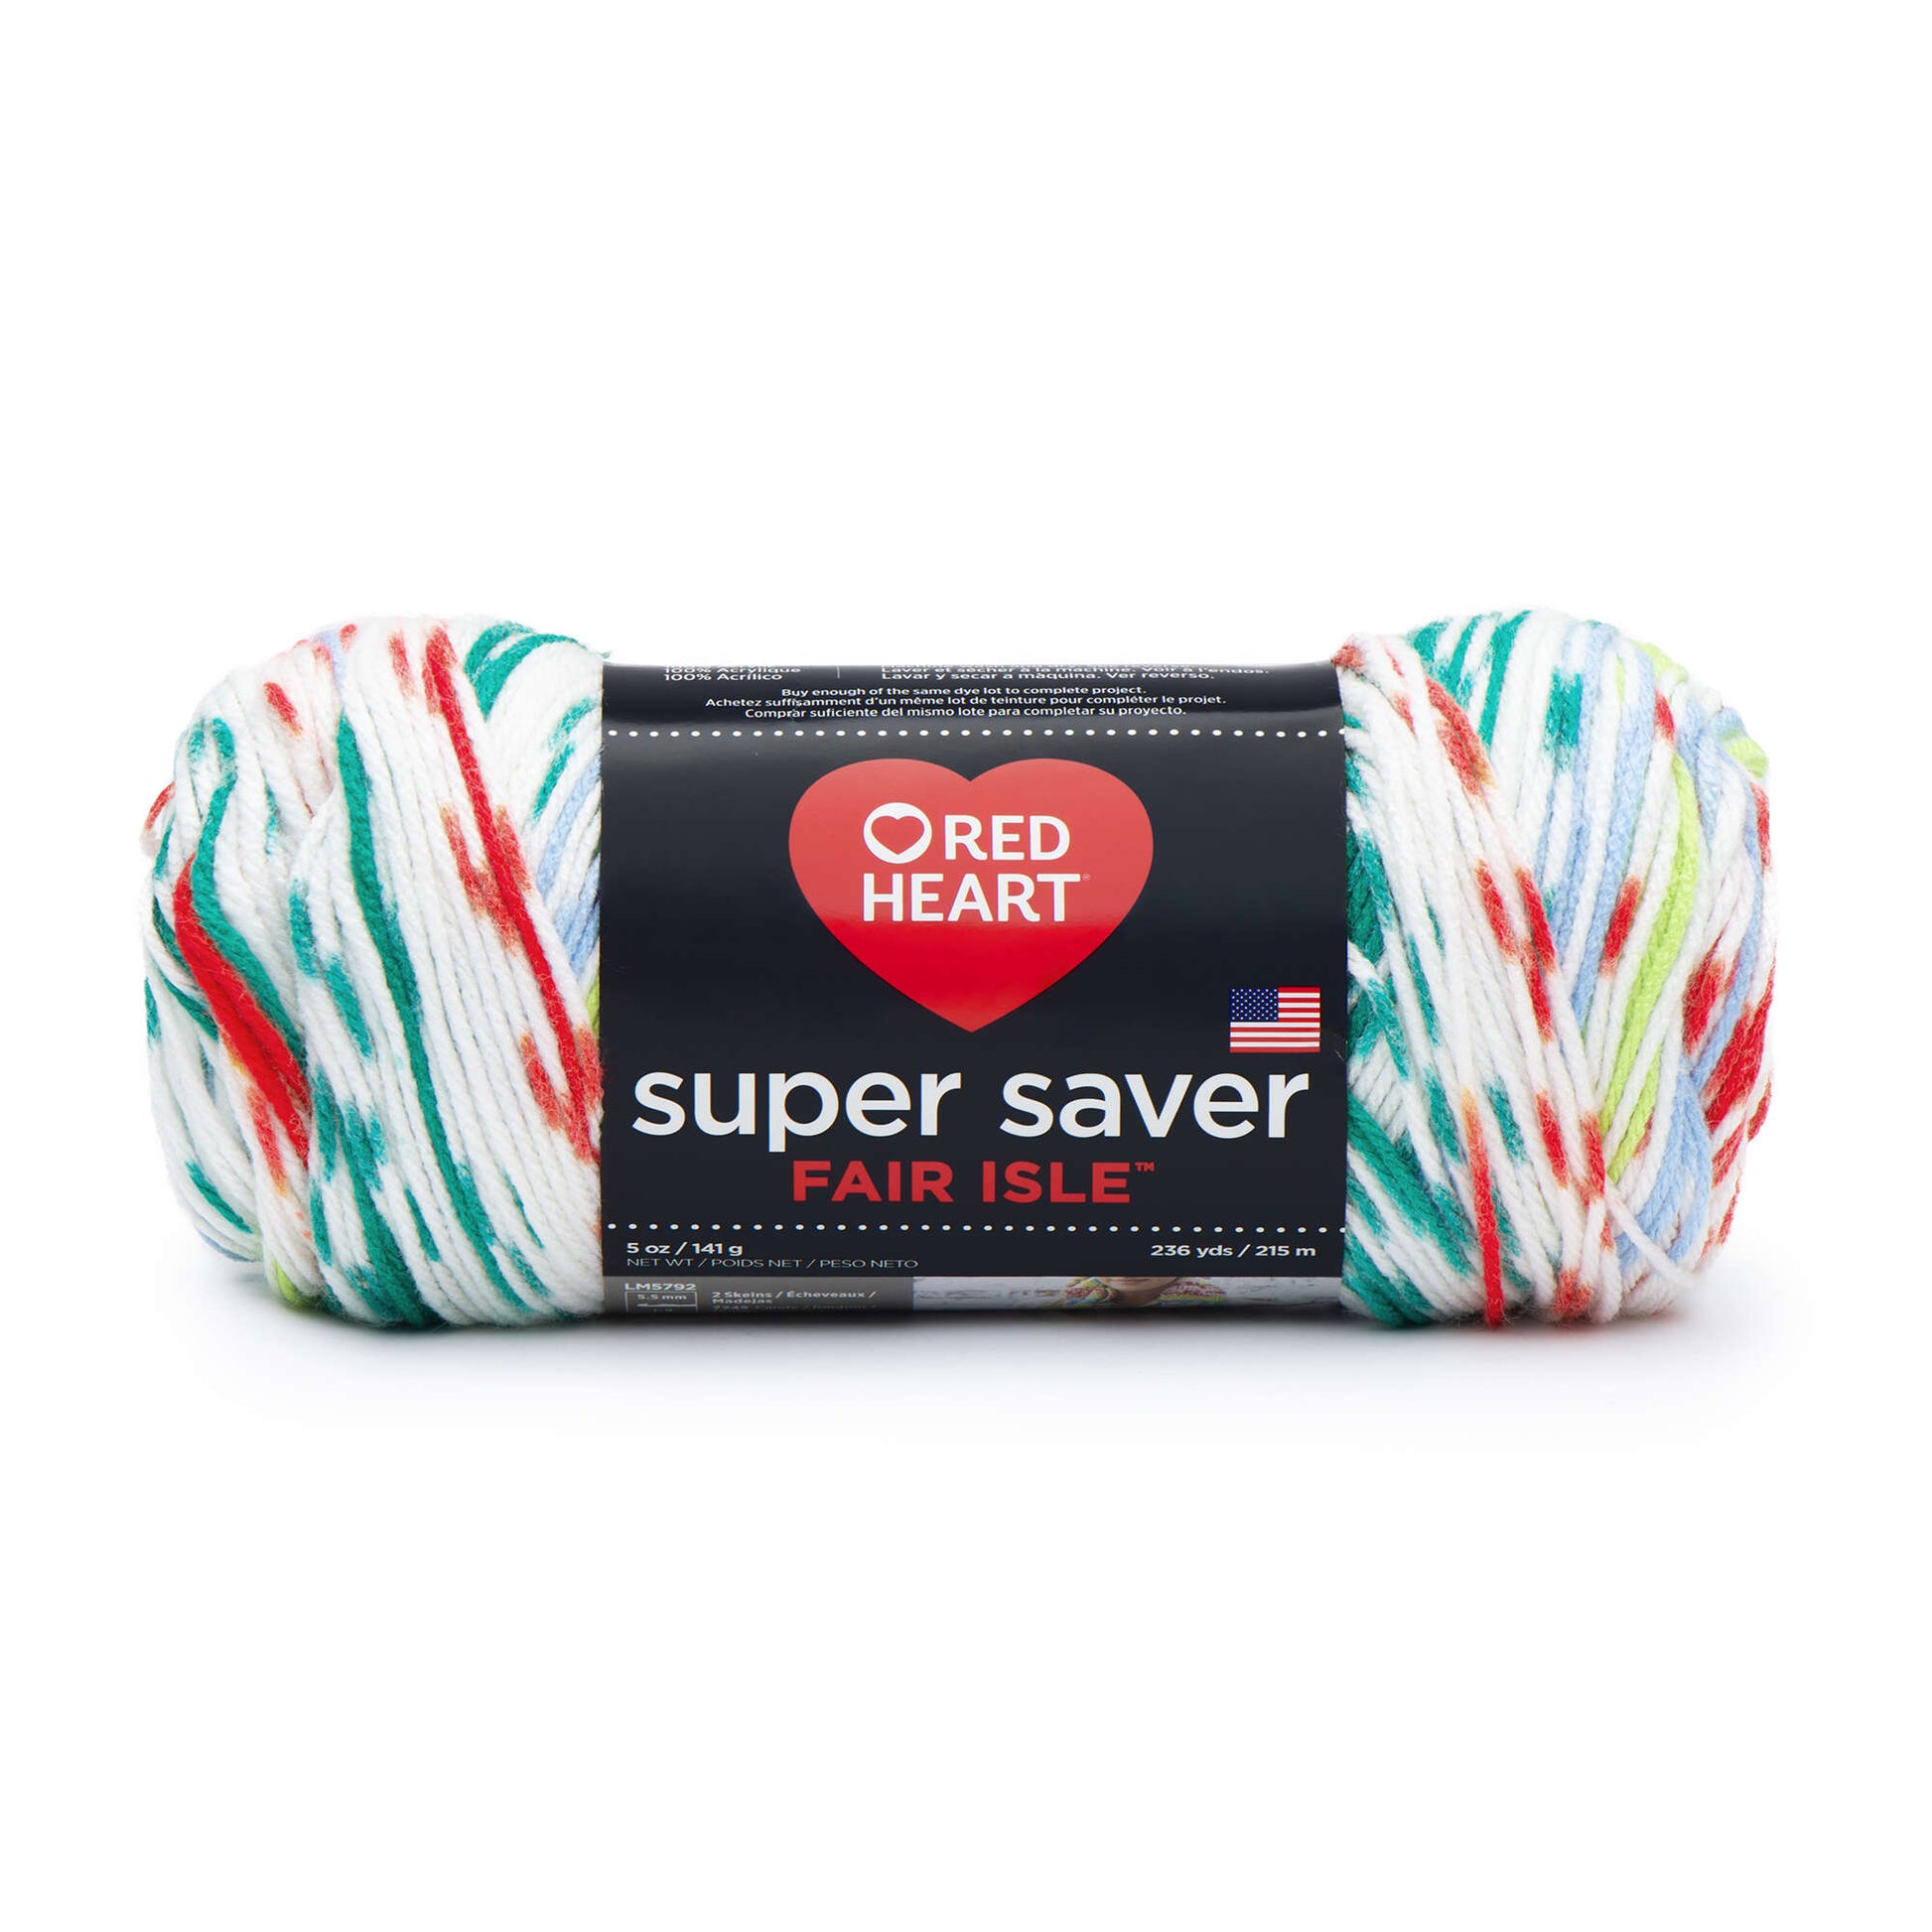 Red Heart Super Saver Fair Isle Yarn - Discontinued shades